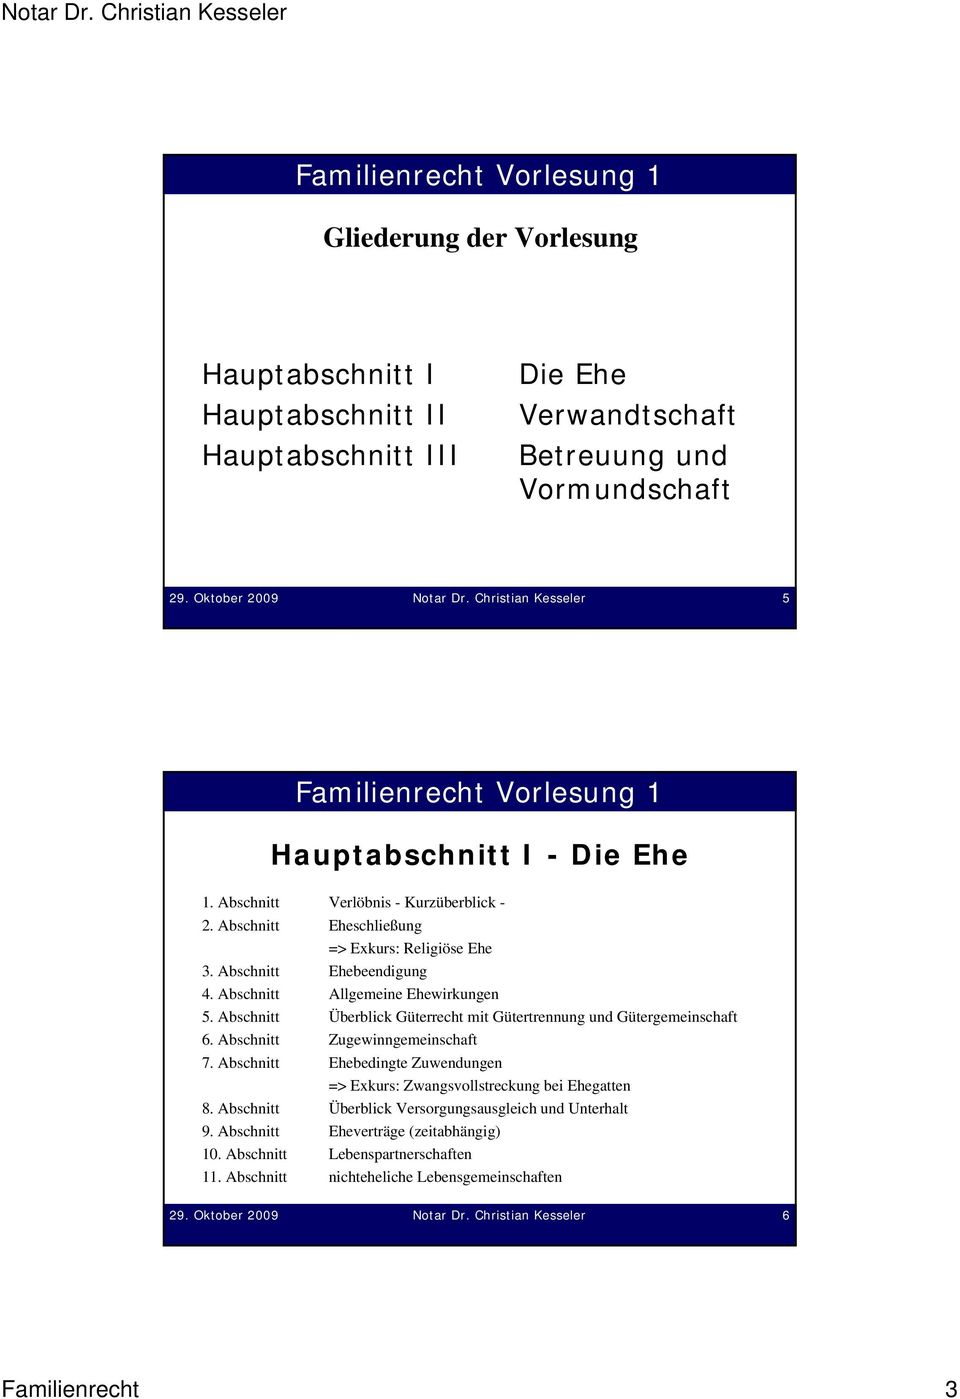 Abschnitt Allgemeine Ehewirkungen 5. Abschnitt Überblick Güterrecht mit Gütertrennung und Gütergemeinschaft 6. Abschnitt Zugewinngemeinschaft 7.